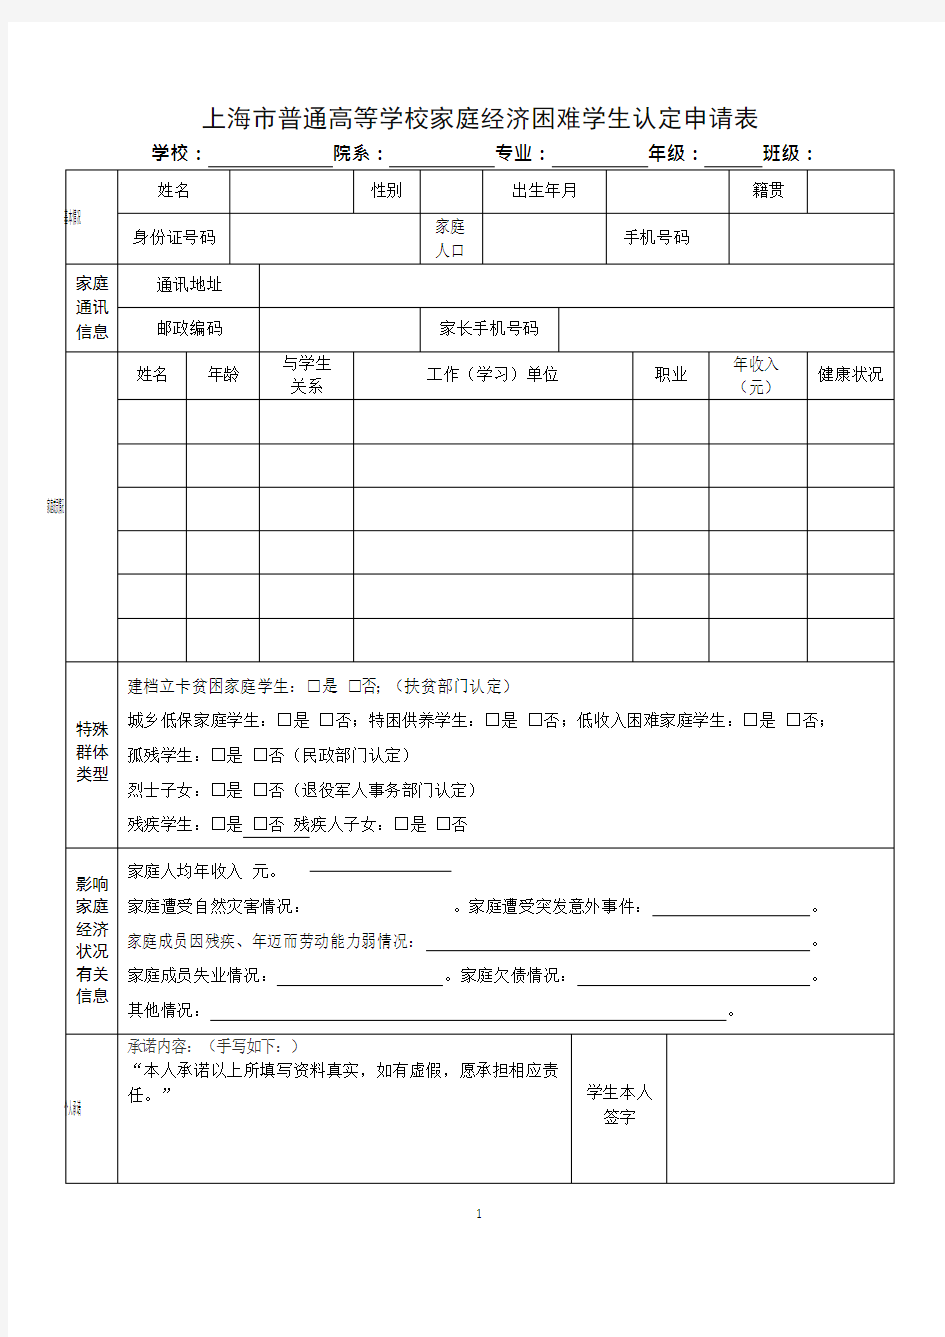 上海市普通高等学校家庭经济困难学生认定申请表